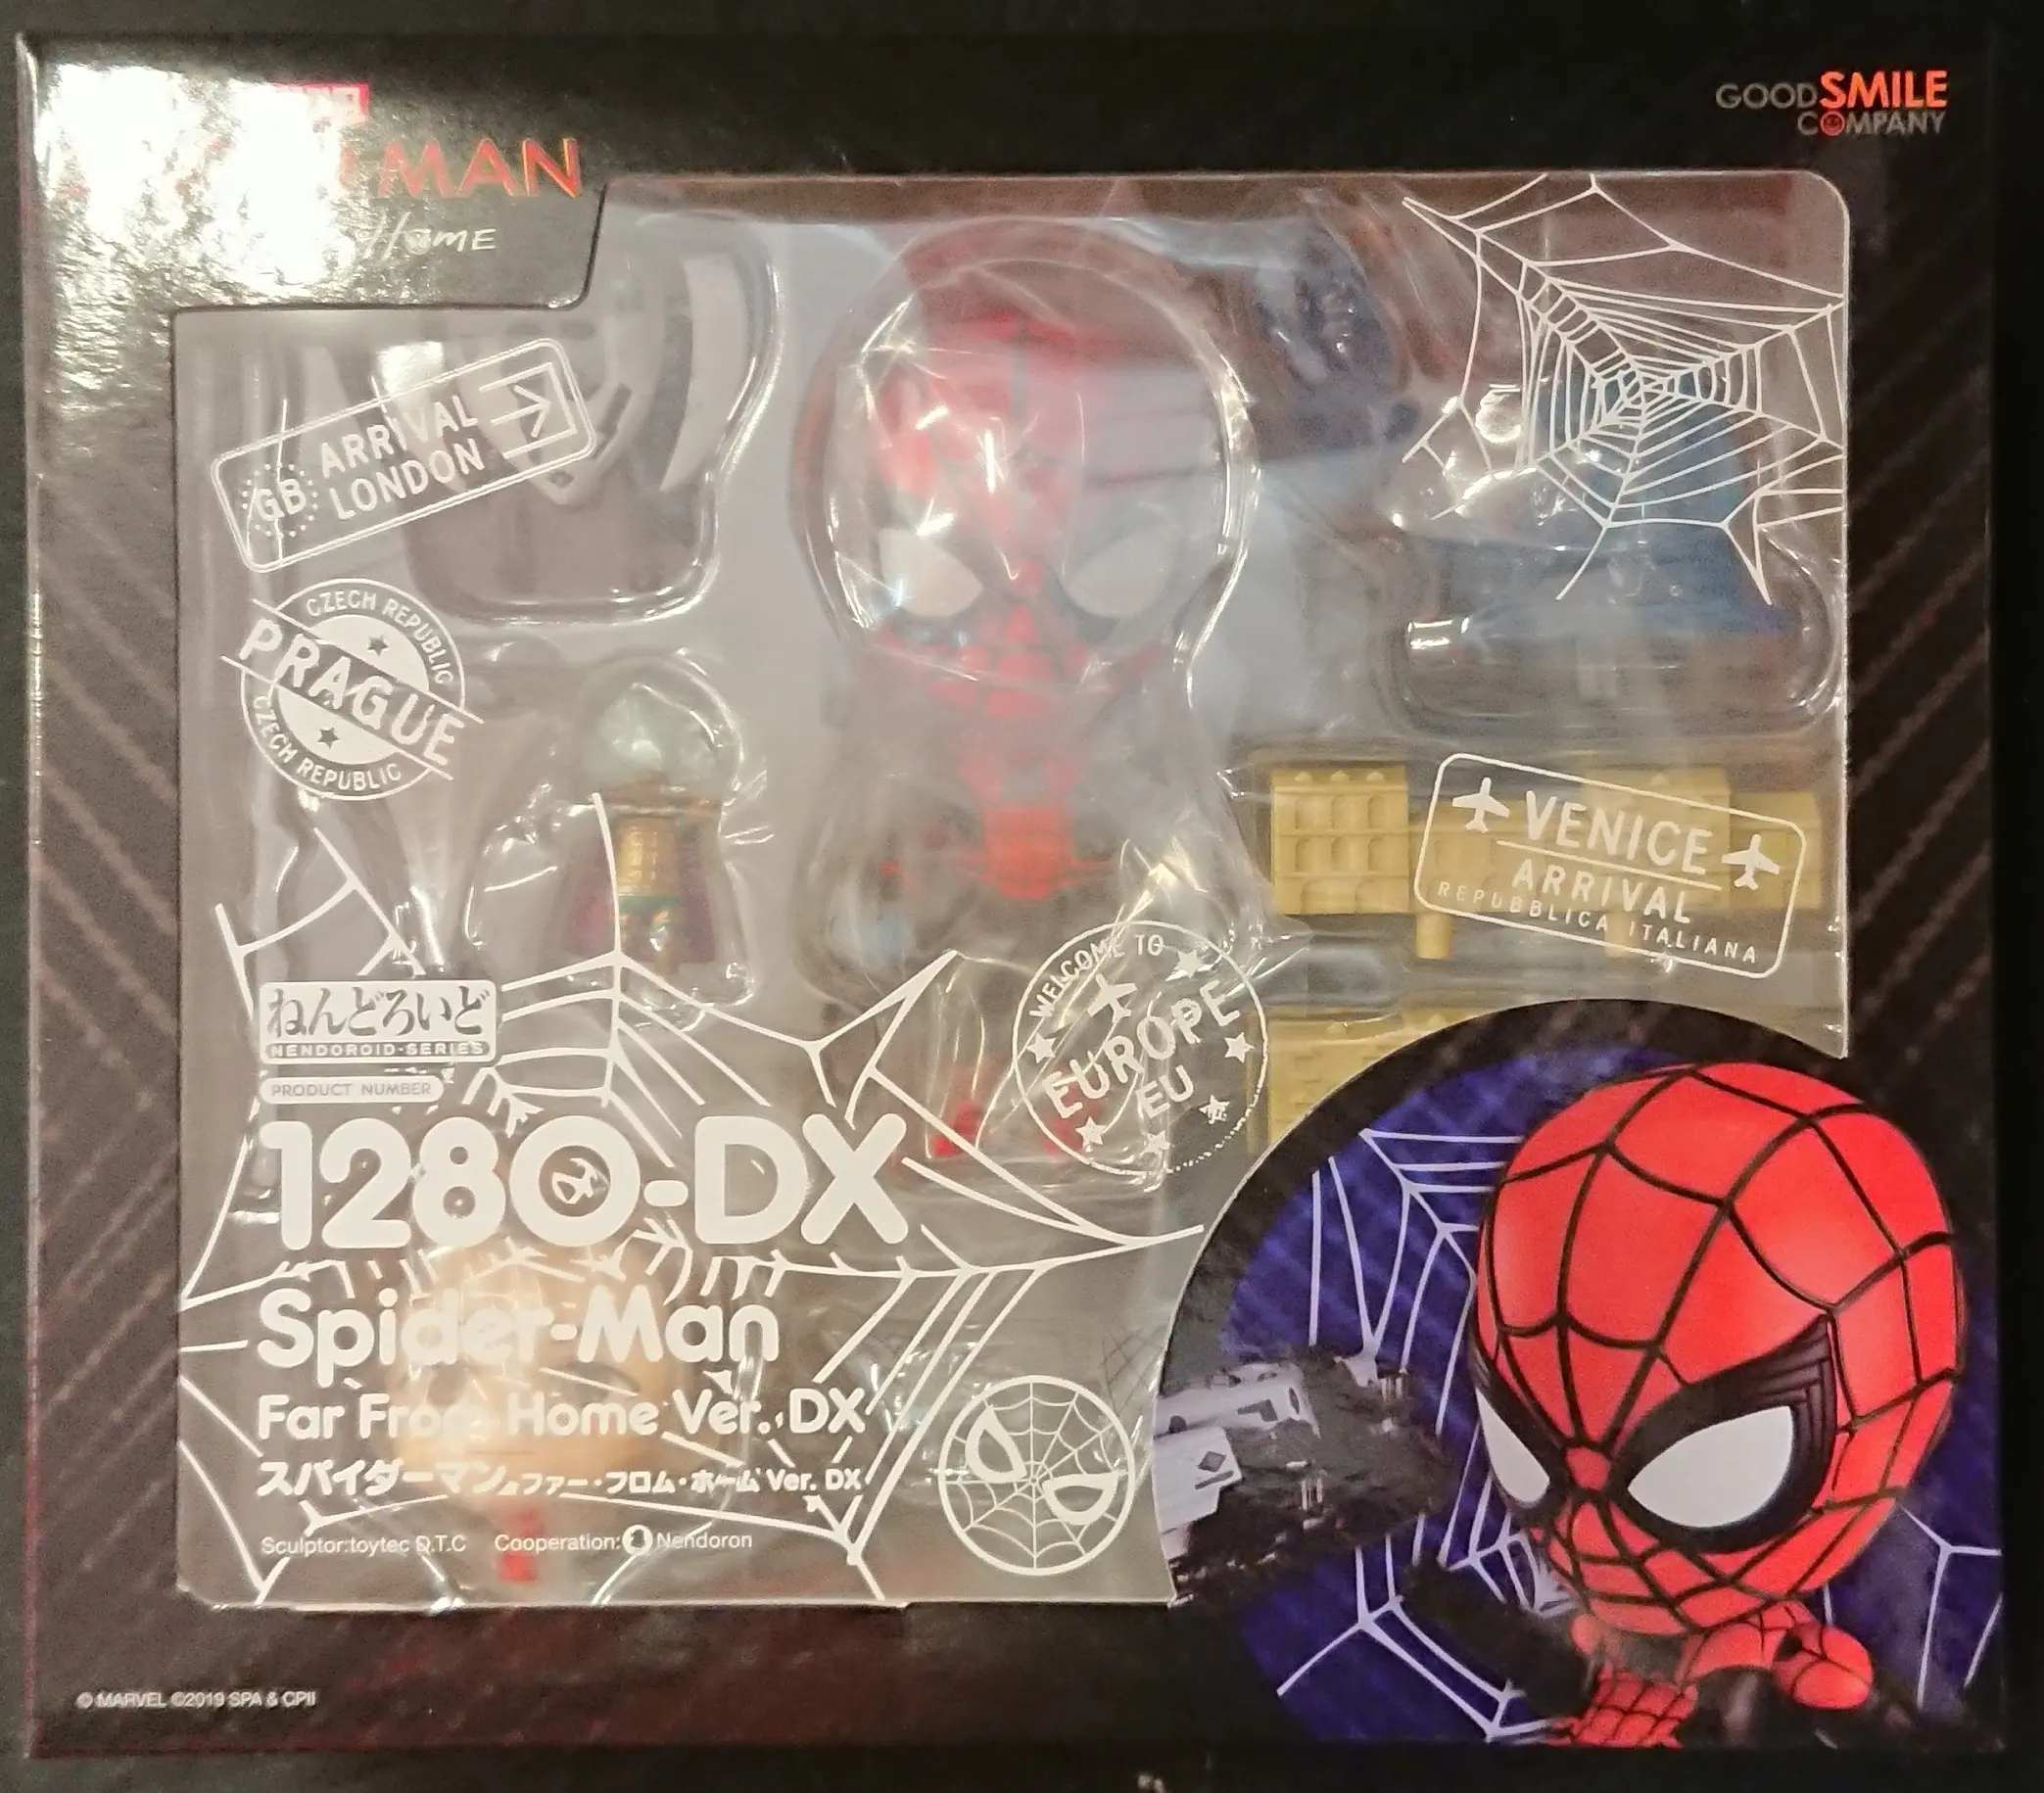 Nendoroid - Spider-Man